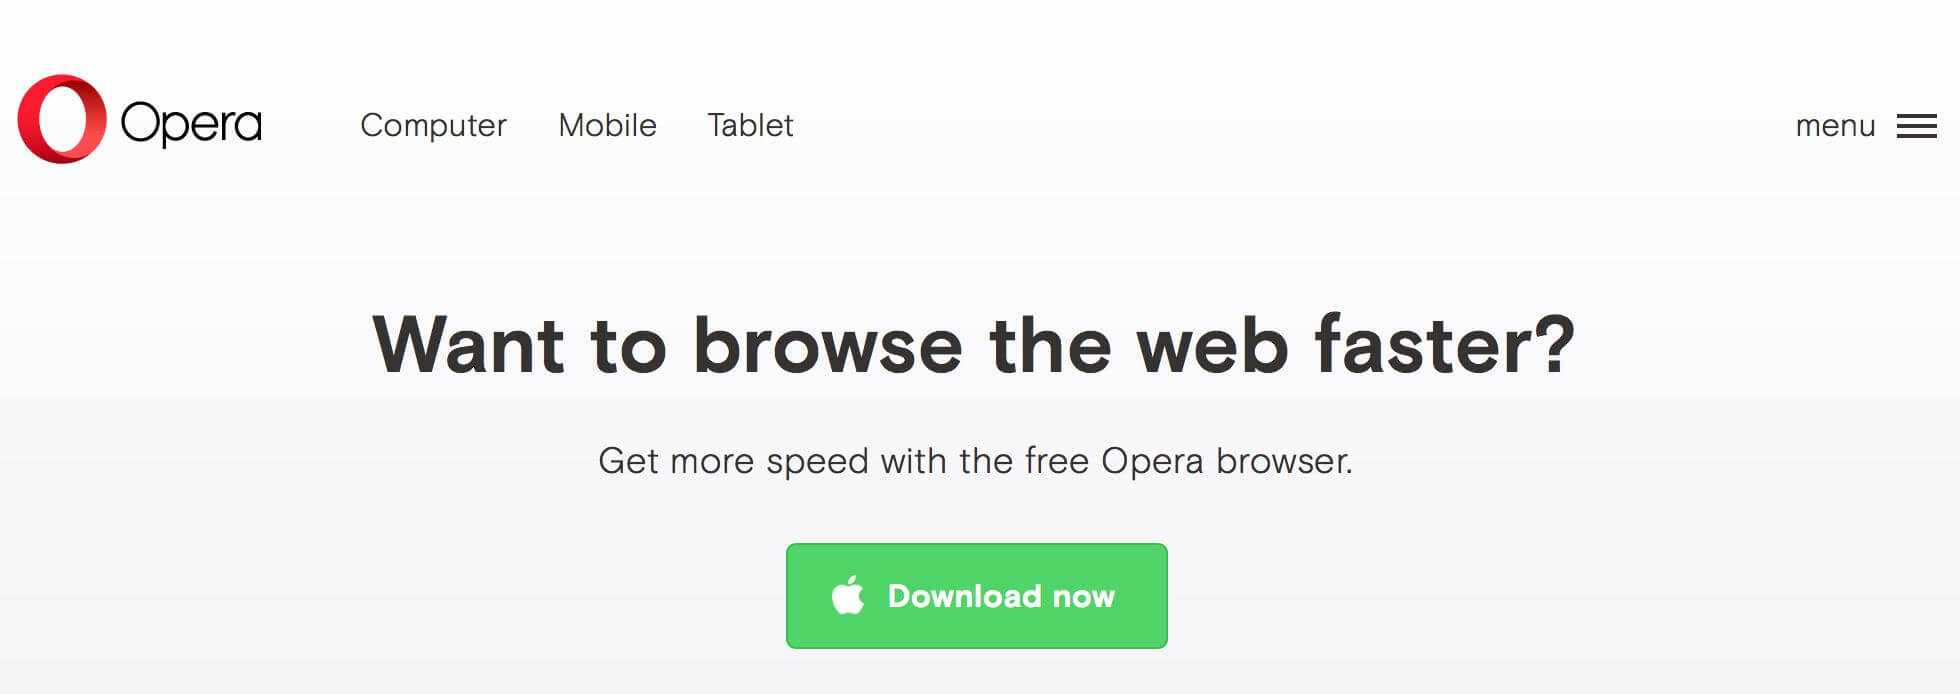  Trình duyệt web cho điện thoại Opera